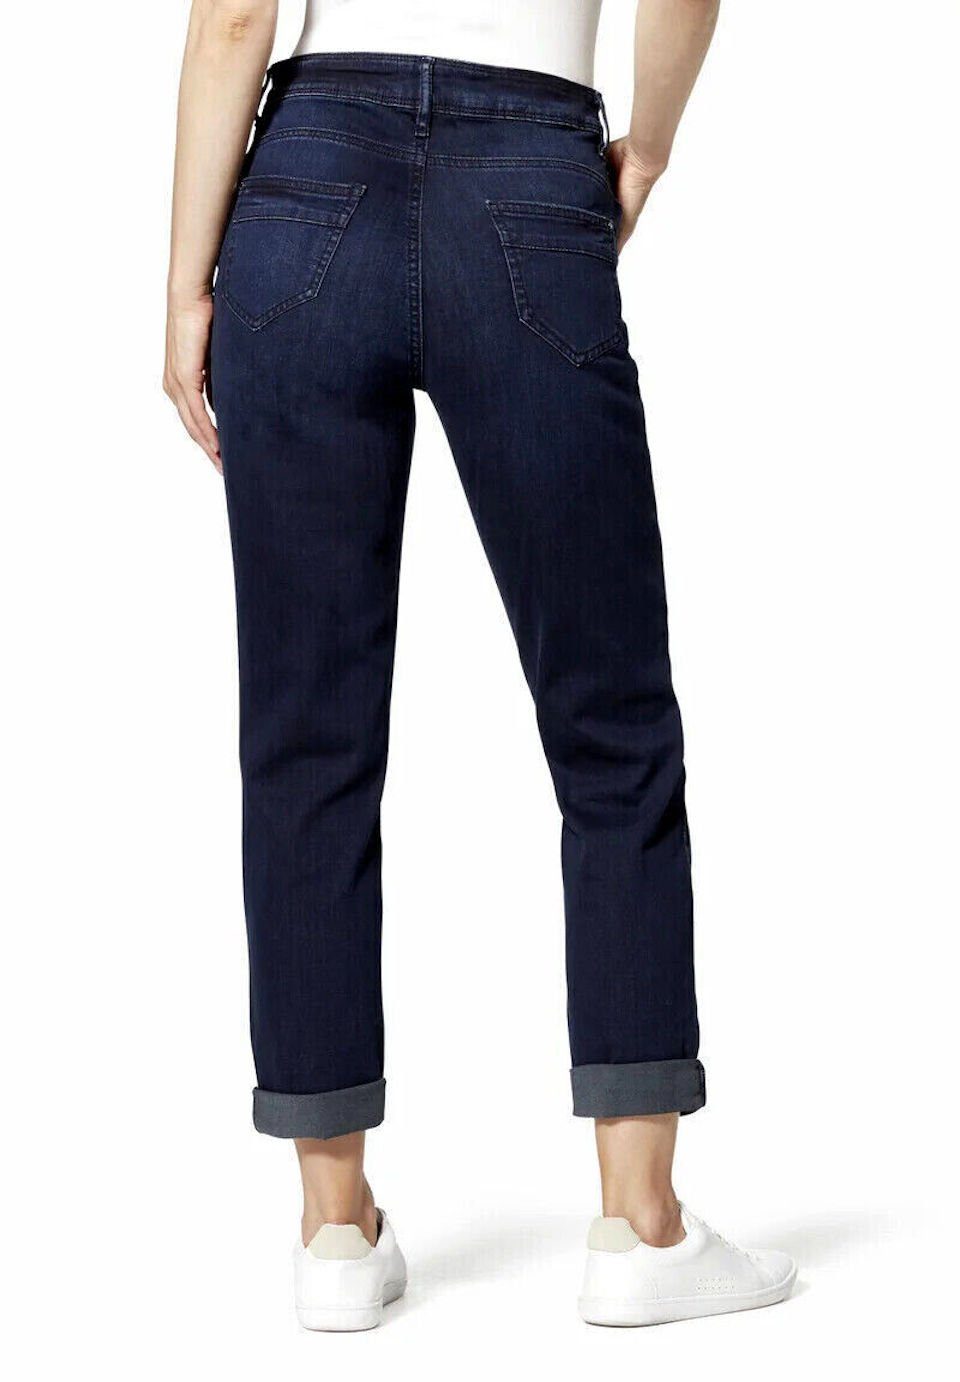 STOOKER WOMEN Boyfriend-Jeans used - FIT DAVOS BOYFRIEND JEANS Blue SLIM HOSE black